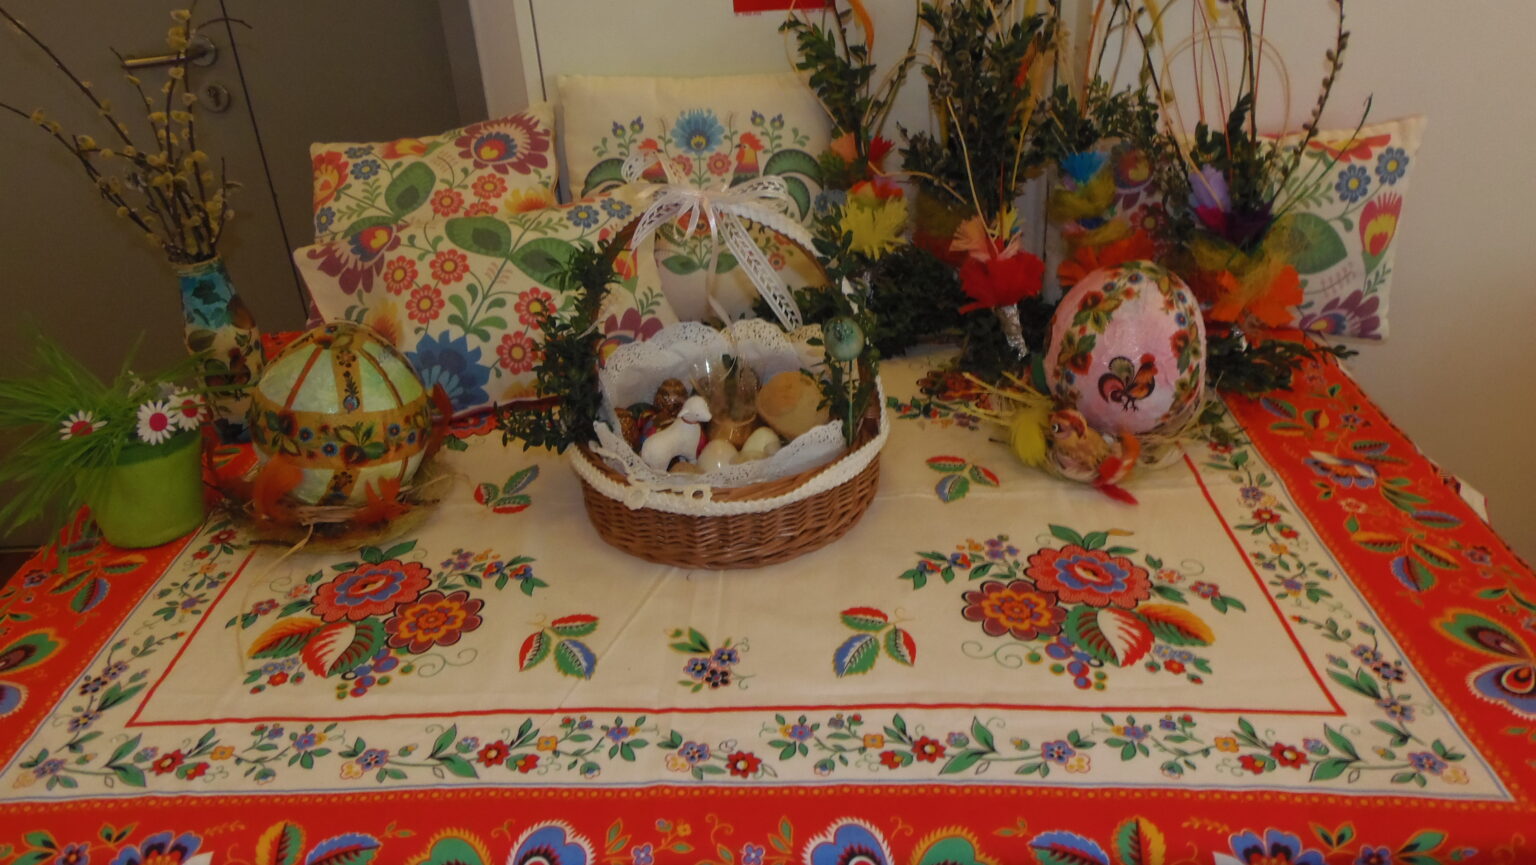 na stole przykrytym barwnym obrusem stoi koszyczek wielkanocny i ozdoby wielkanocne palmy, pisanki i kolorowe poduszki.